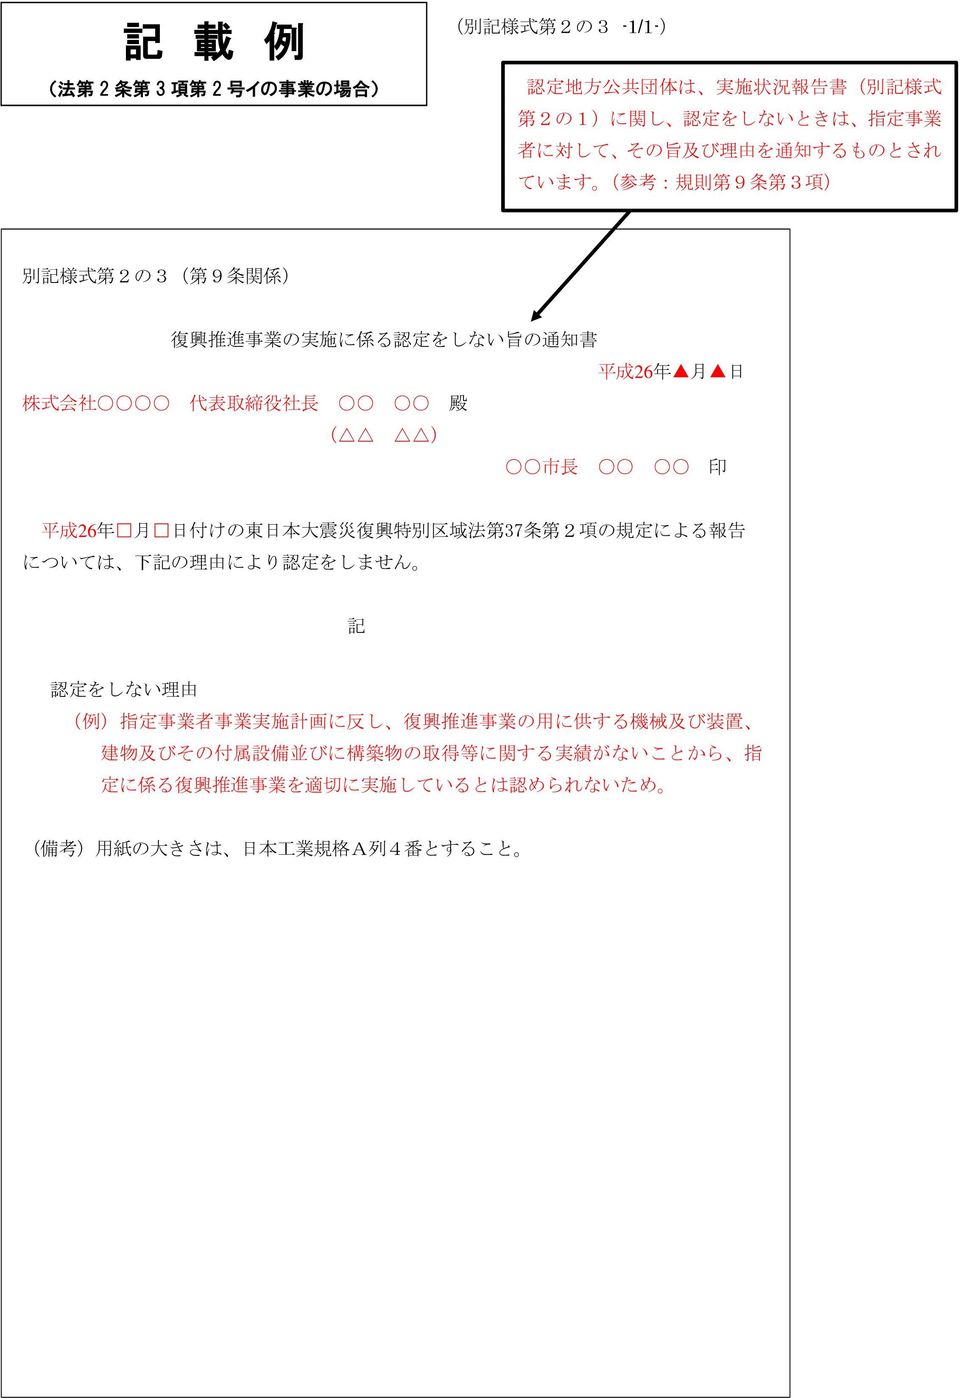 ) 市長 印 平成 26 年 月 日付けの東日本大震災復興特別区域法第 37 条第 2 項の規定による報告については 下記の理由により認定をしません 記 認定をしない理由 ( 例 )